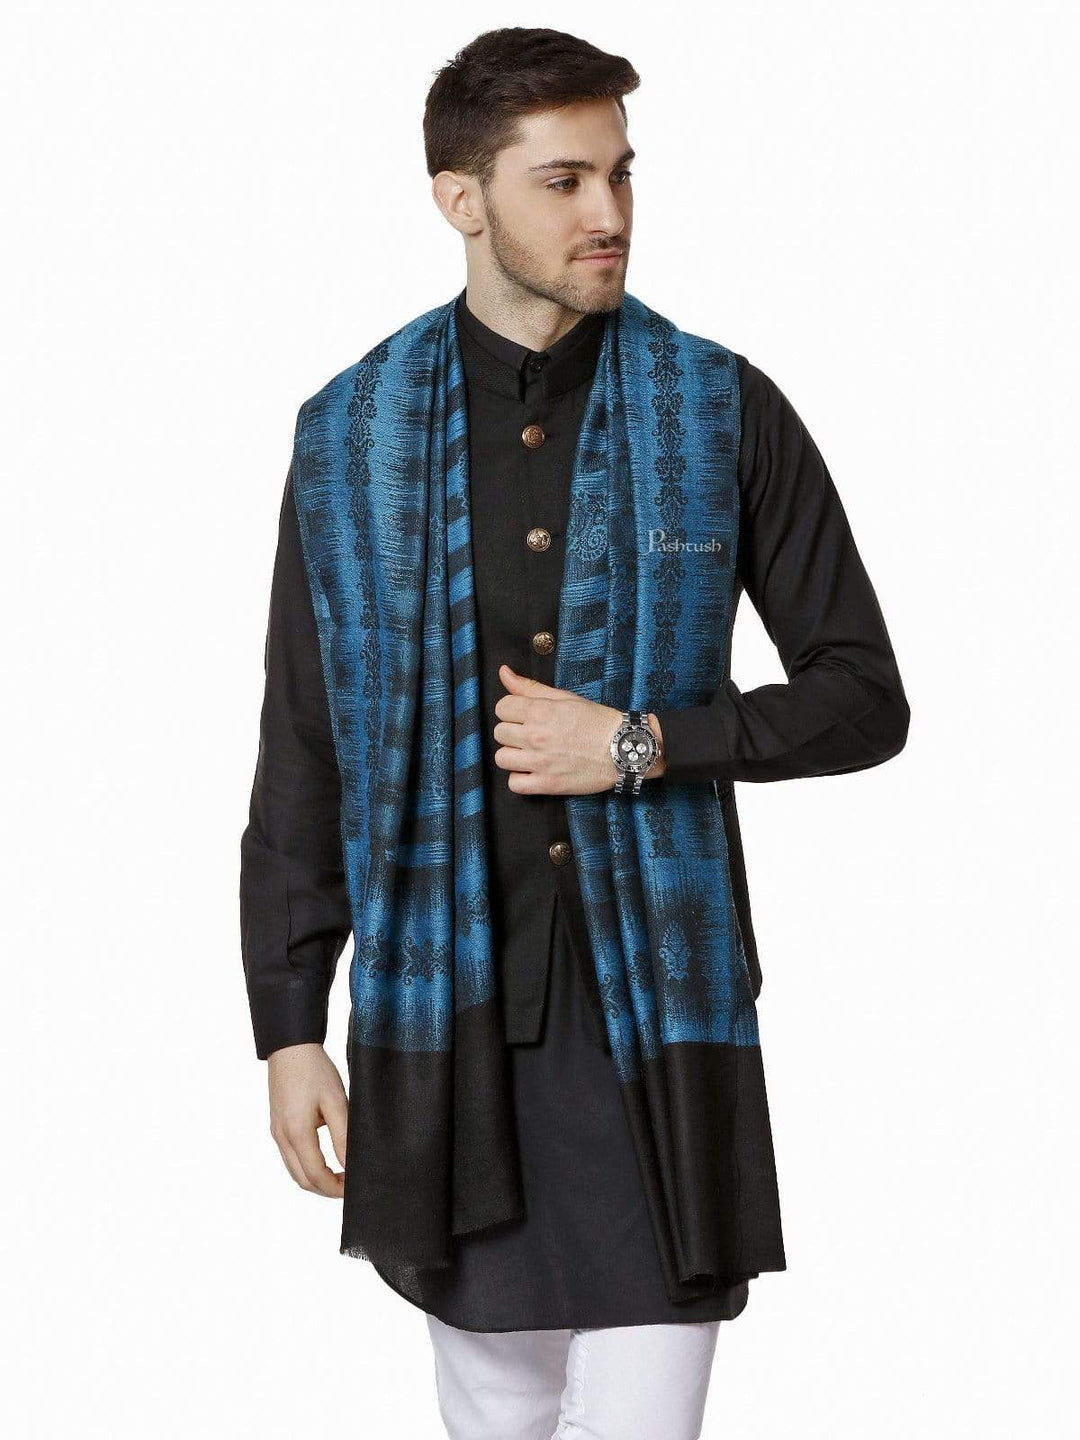 Pashtush India 70x200 Pashtush Mens Fine Wool Stole, Ikkat Design, Pacific Blue